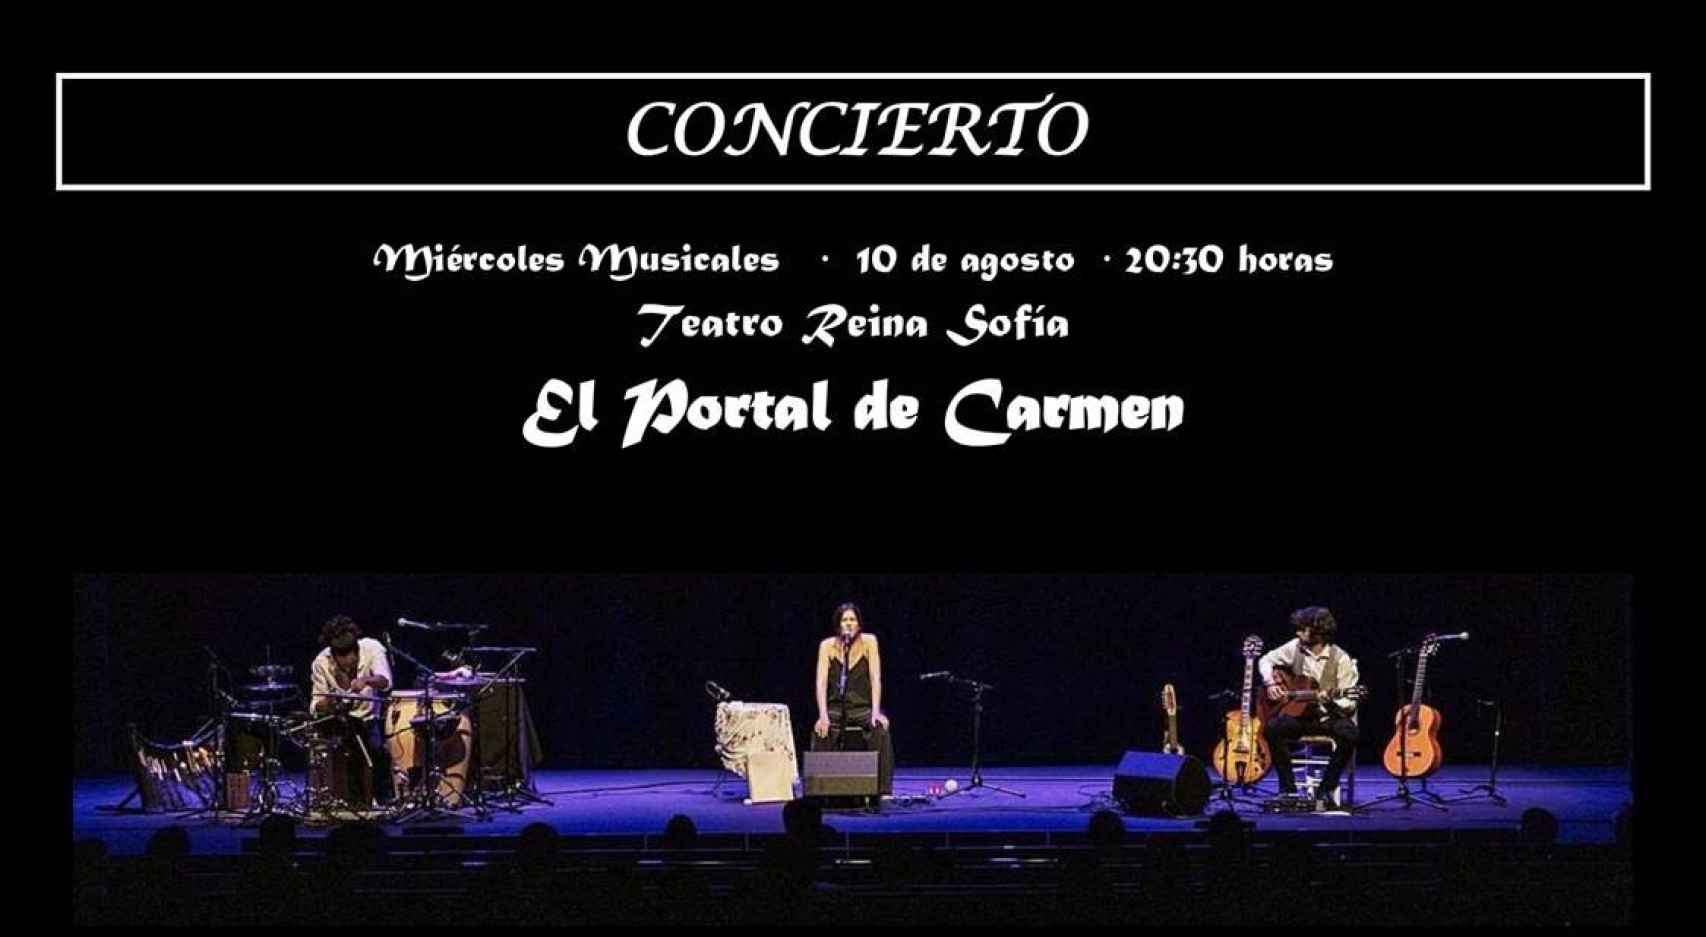 Cartel del concierto de El Portal de Carmen